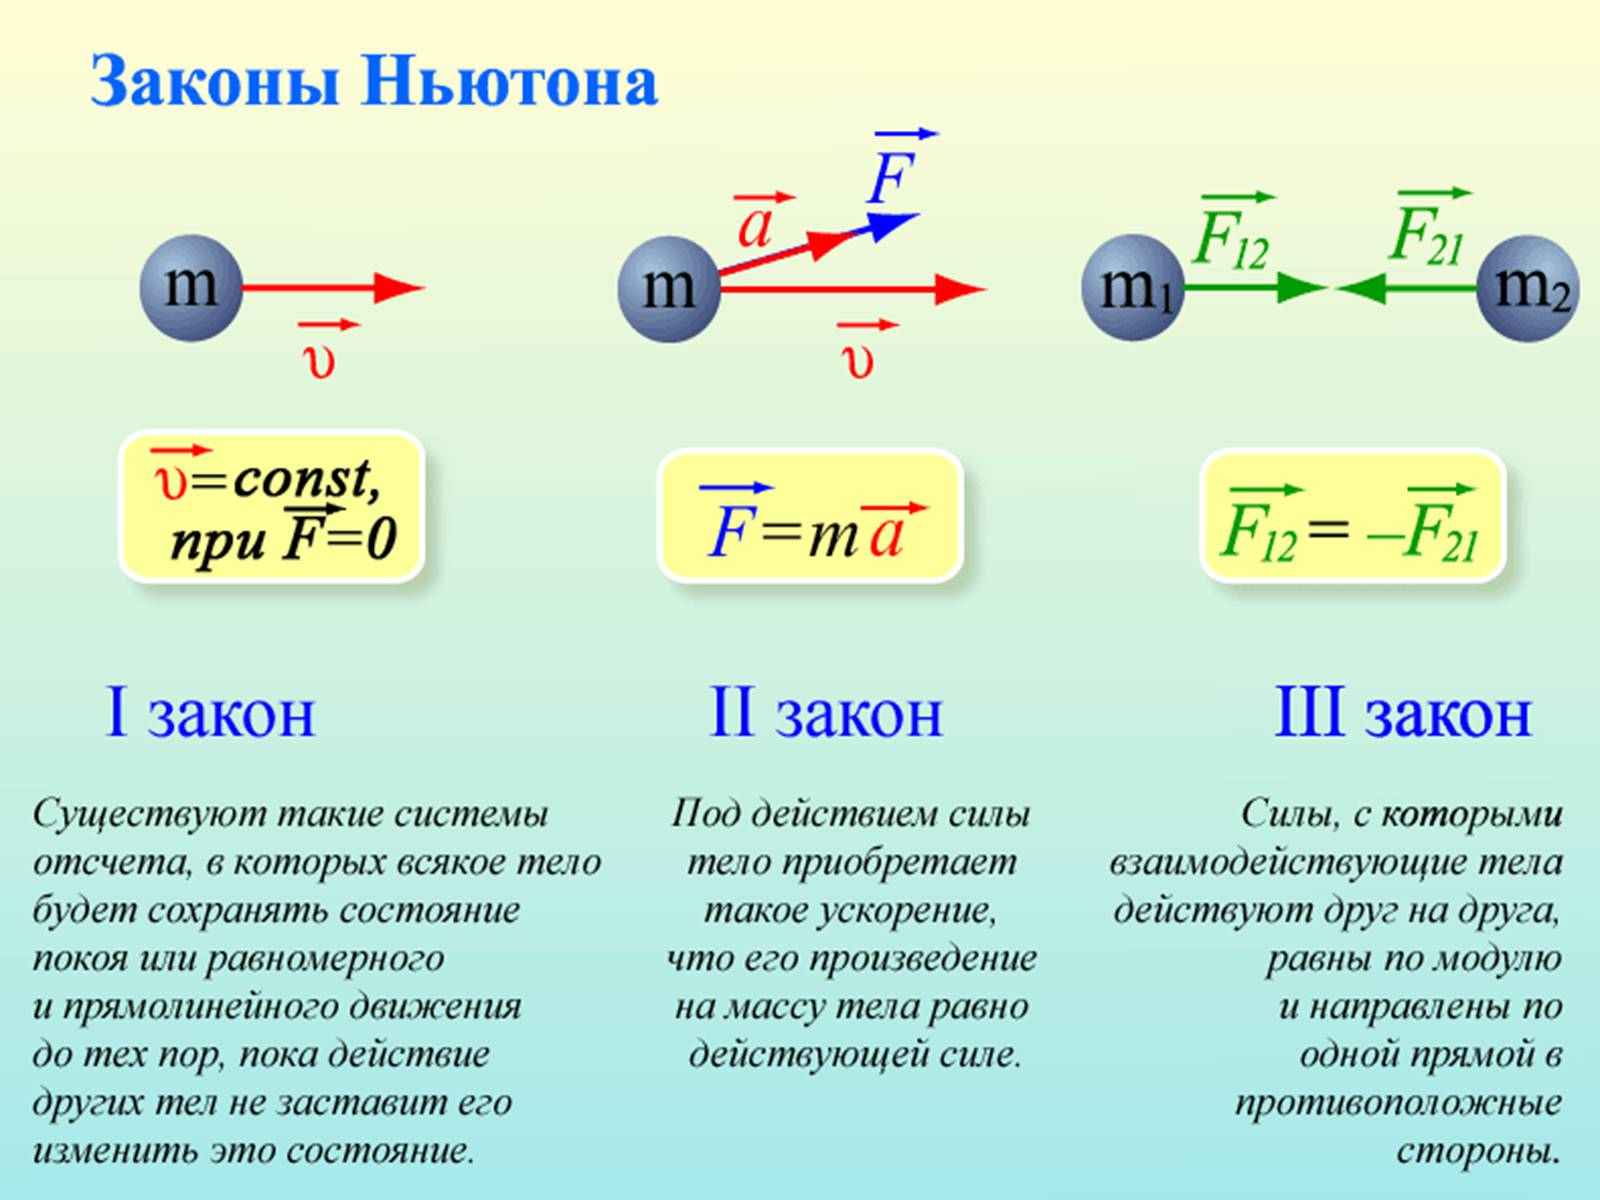 Формулировка трех законов Ньютона